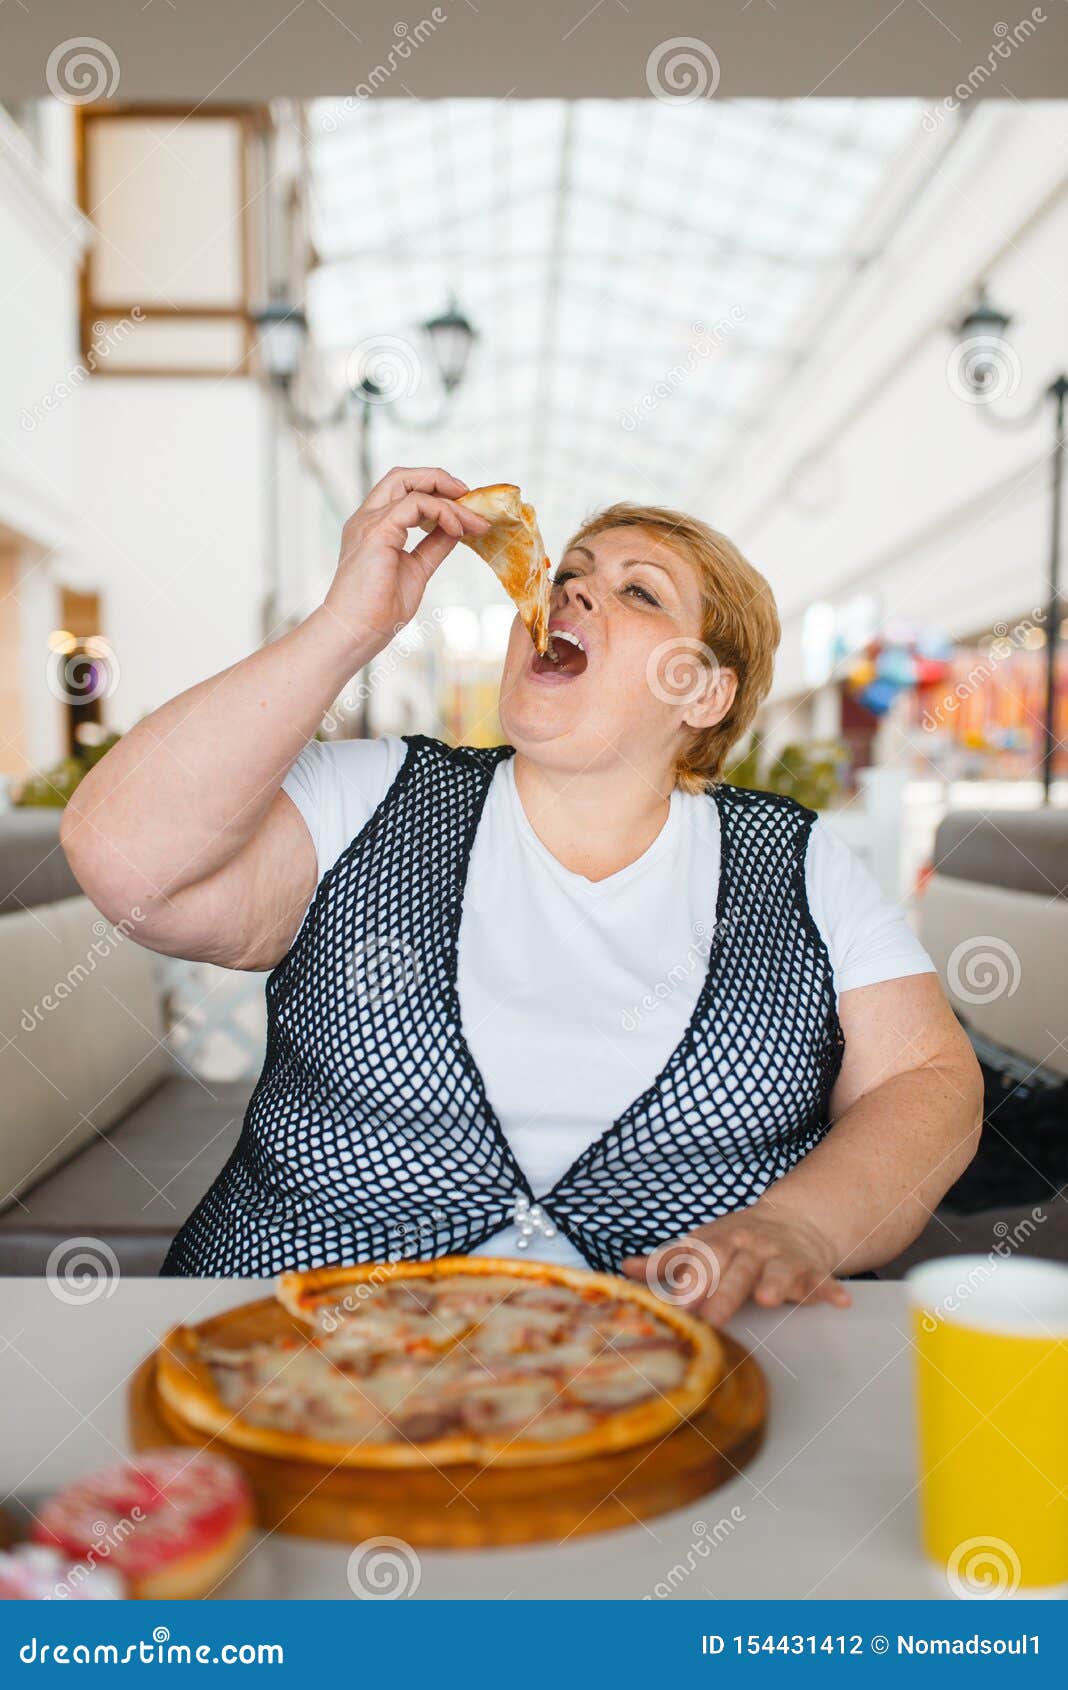 maddy_b passe Générale (1) Donna-grassa-che-mangia-pizza-alimento-non-sano-nel-ristorante-del-centro-commerciale-persona-femminile-di-peso-eccessivo-alla-154431412